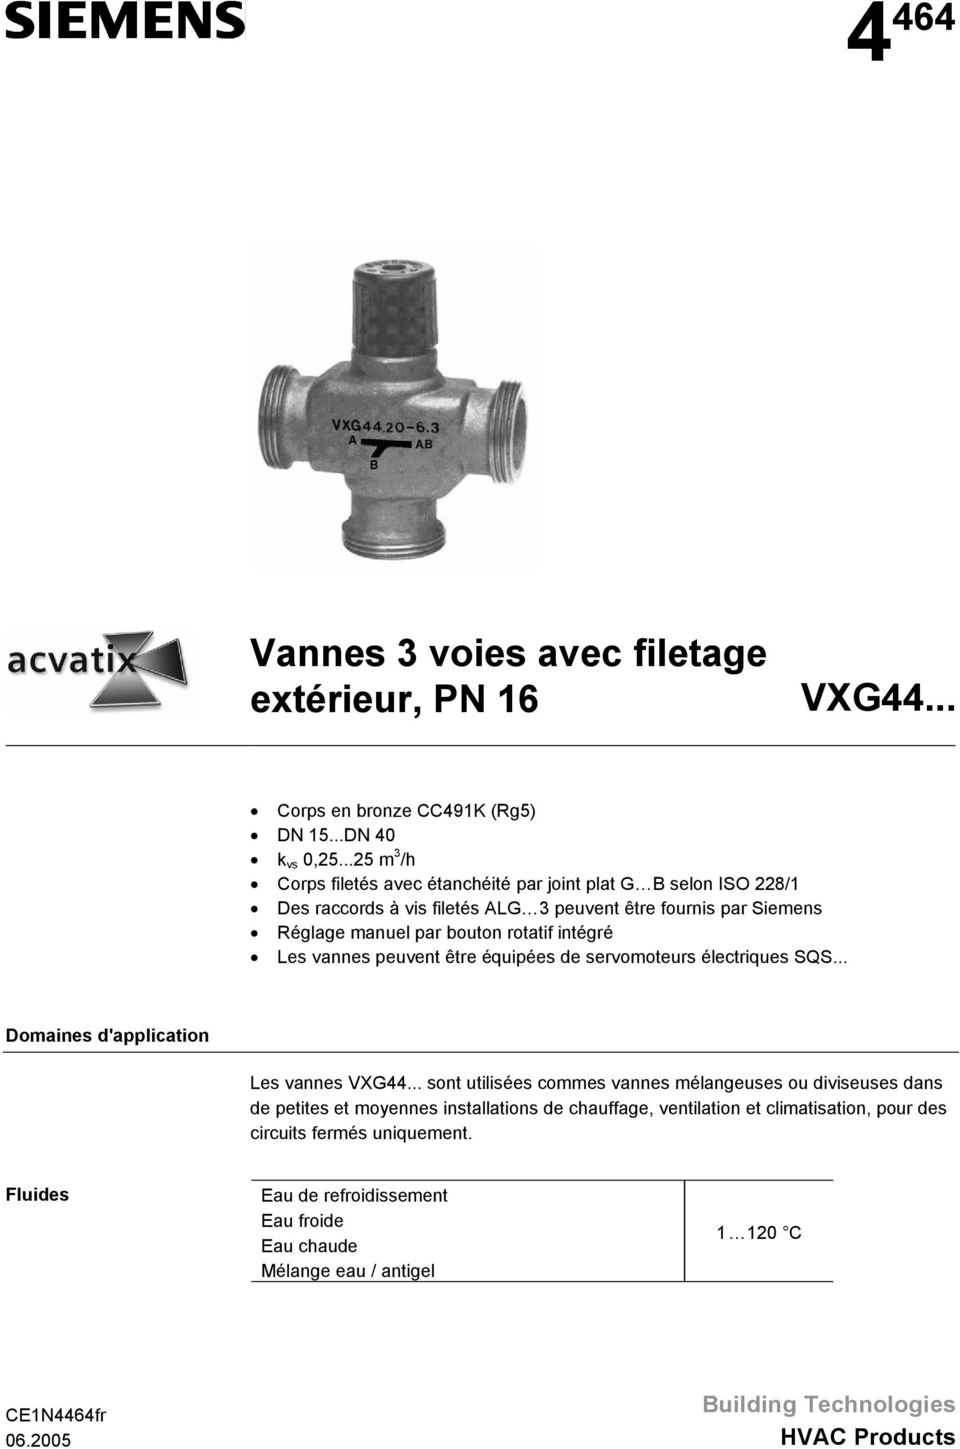 intégré Les vannes peuvent être équipées de servomoteurs électriques SQS... Domaines d'application Les vannes VXG44.